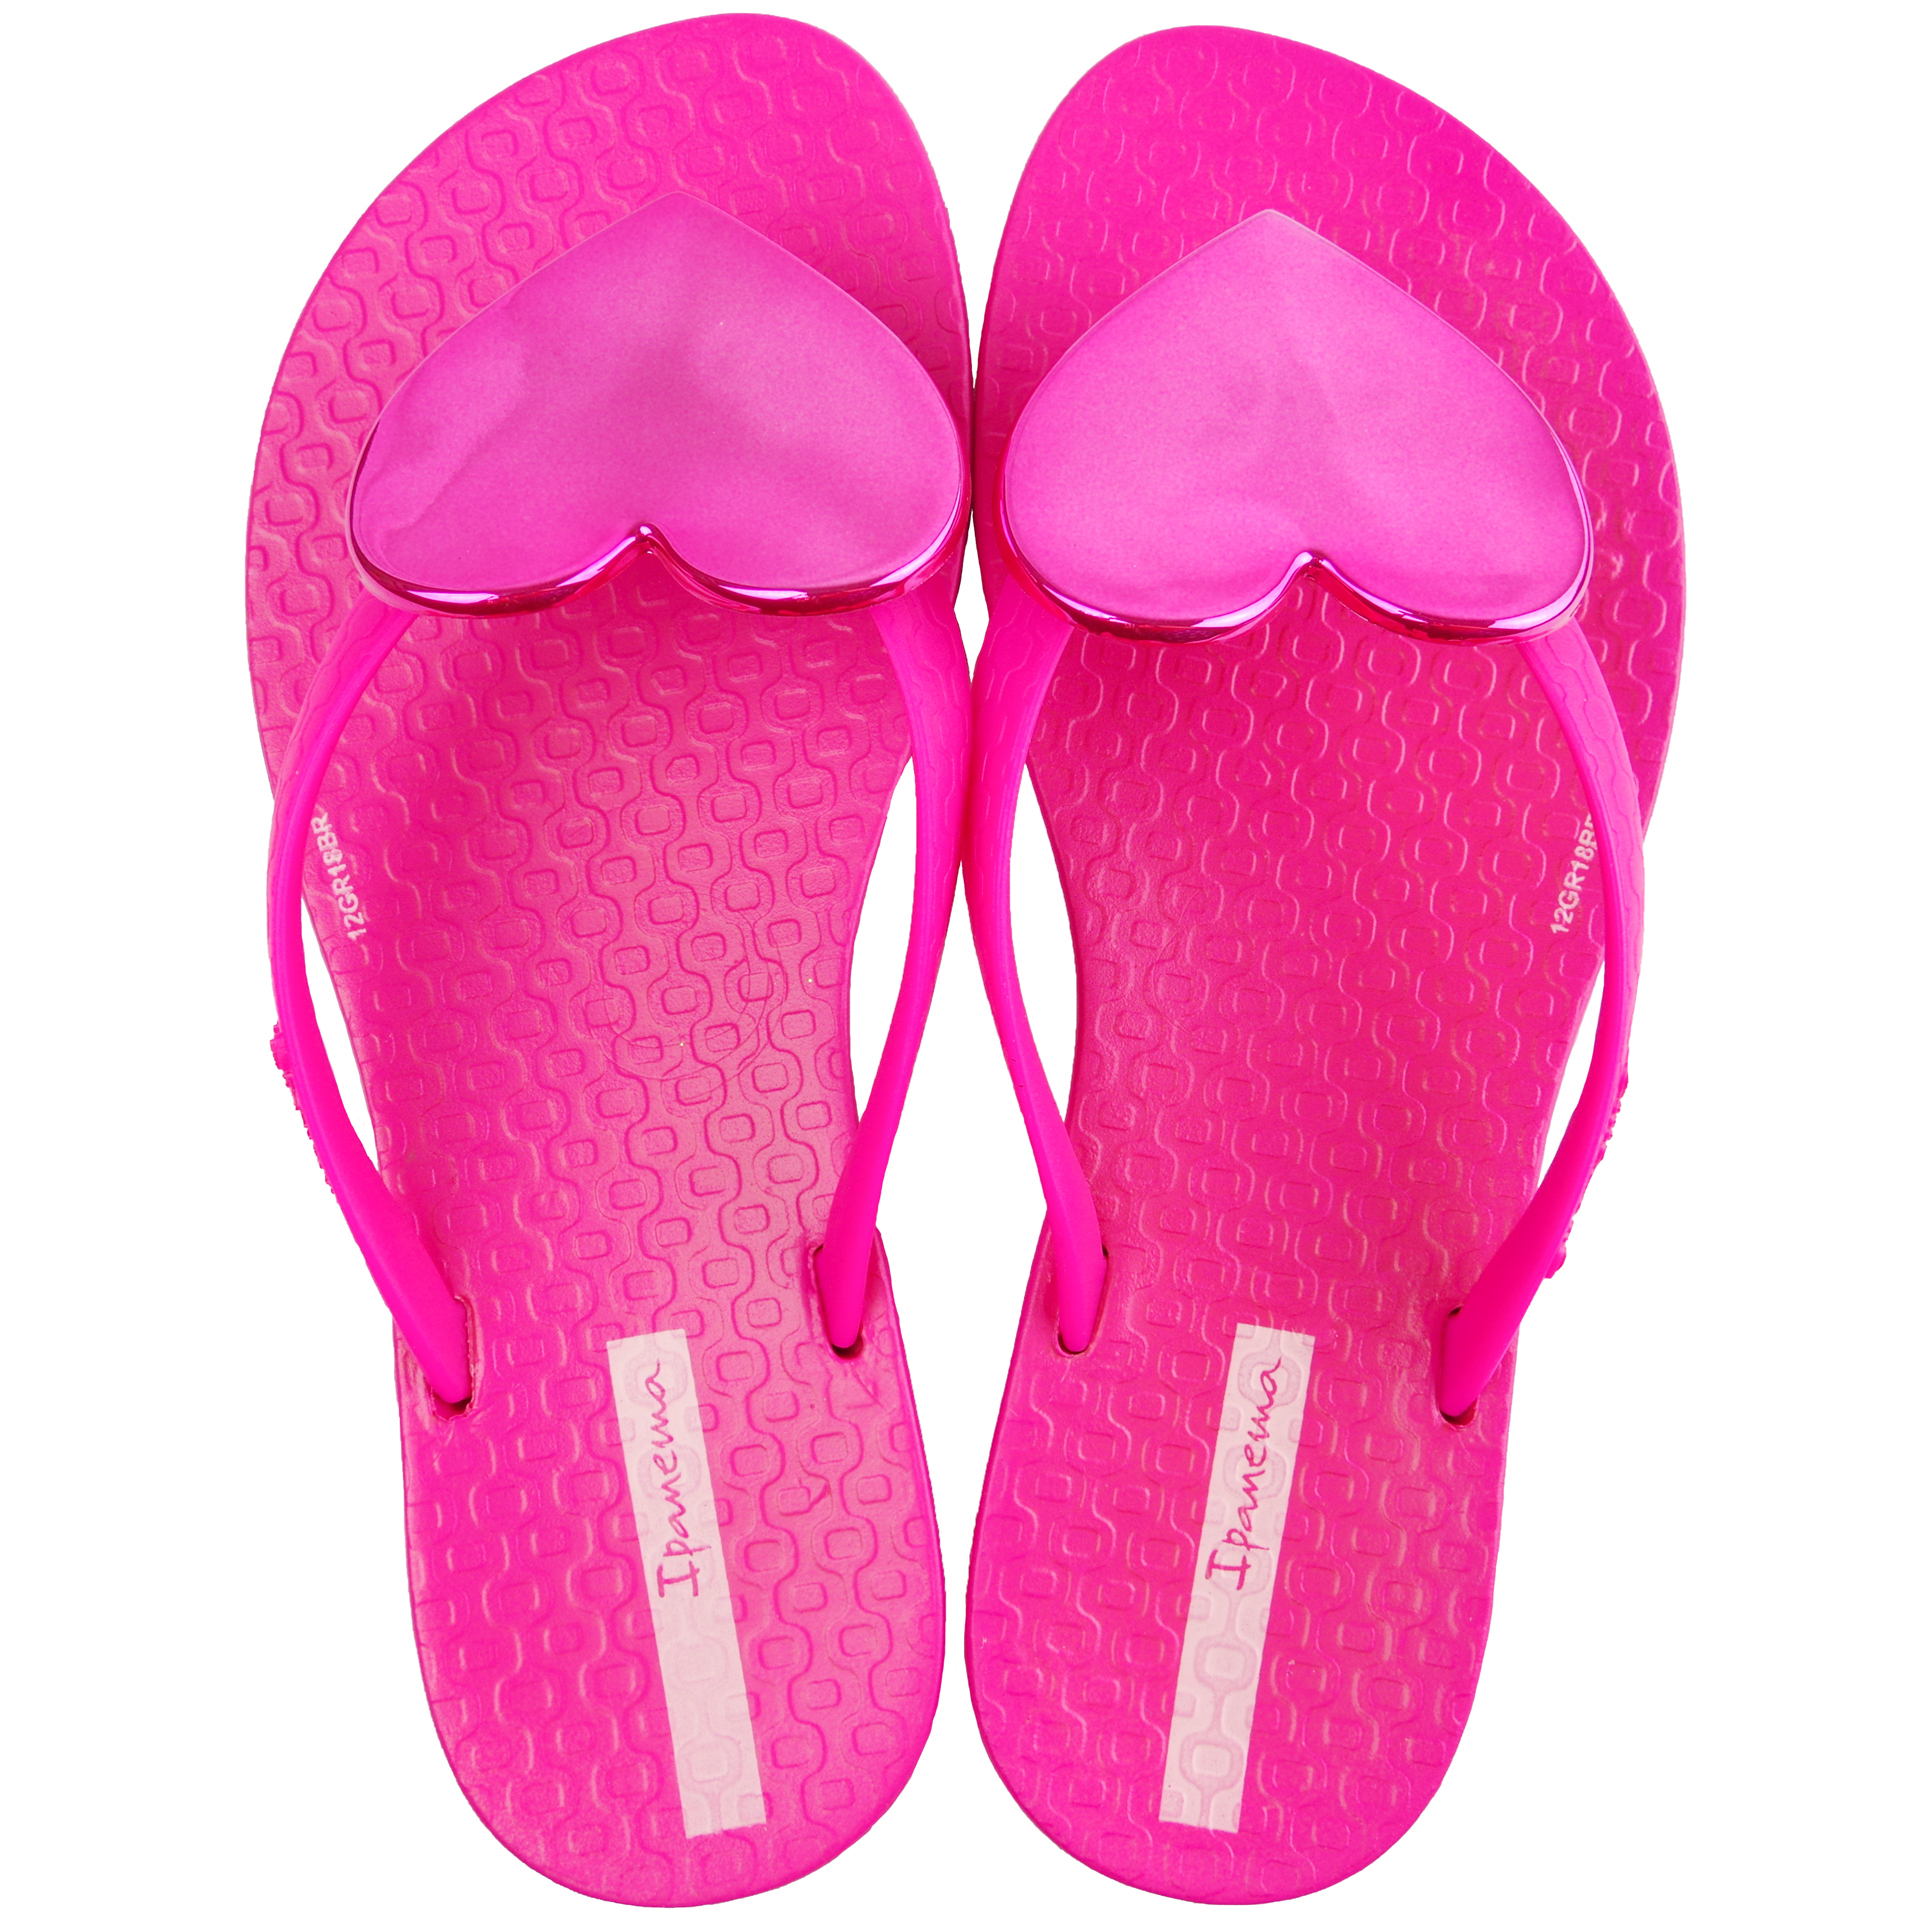 Пляжная обувь для девочки - шлепки детские (1840) 27-36 размеры, цвет Розовый – Sole Kids